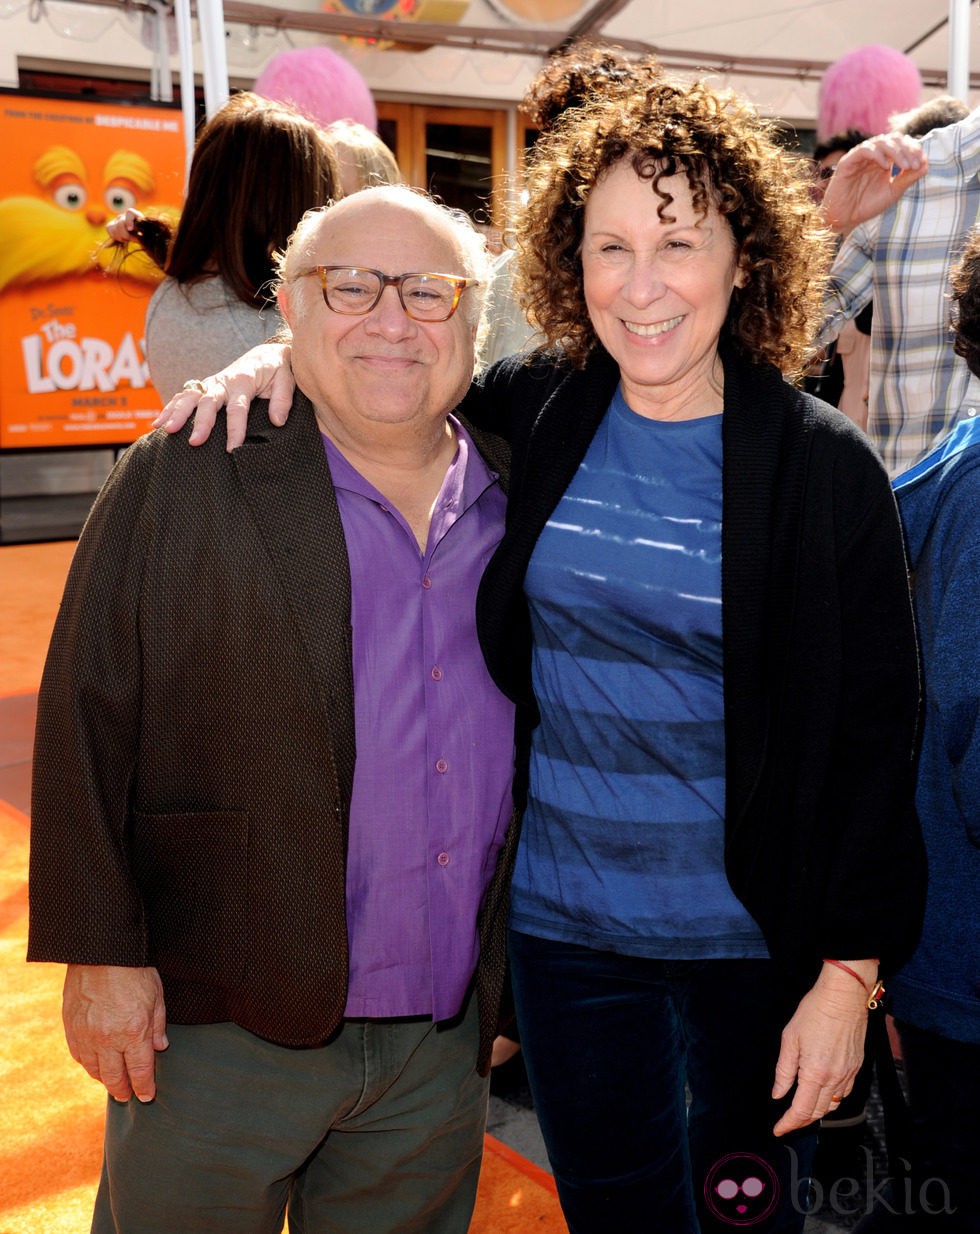 Danny Devito y su mujer Rhea Perlman en el estreno del filme Lorax